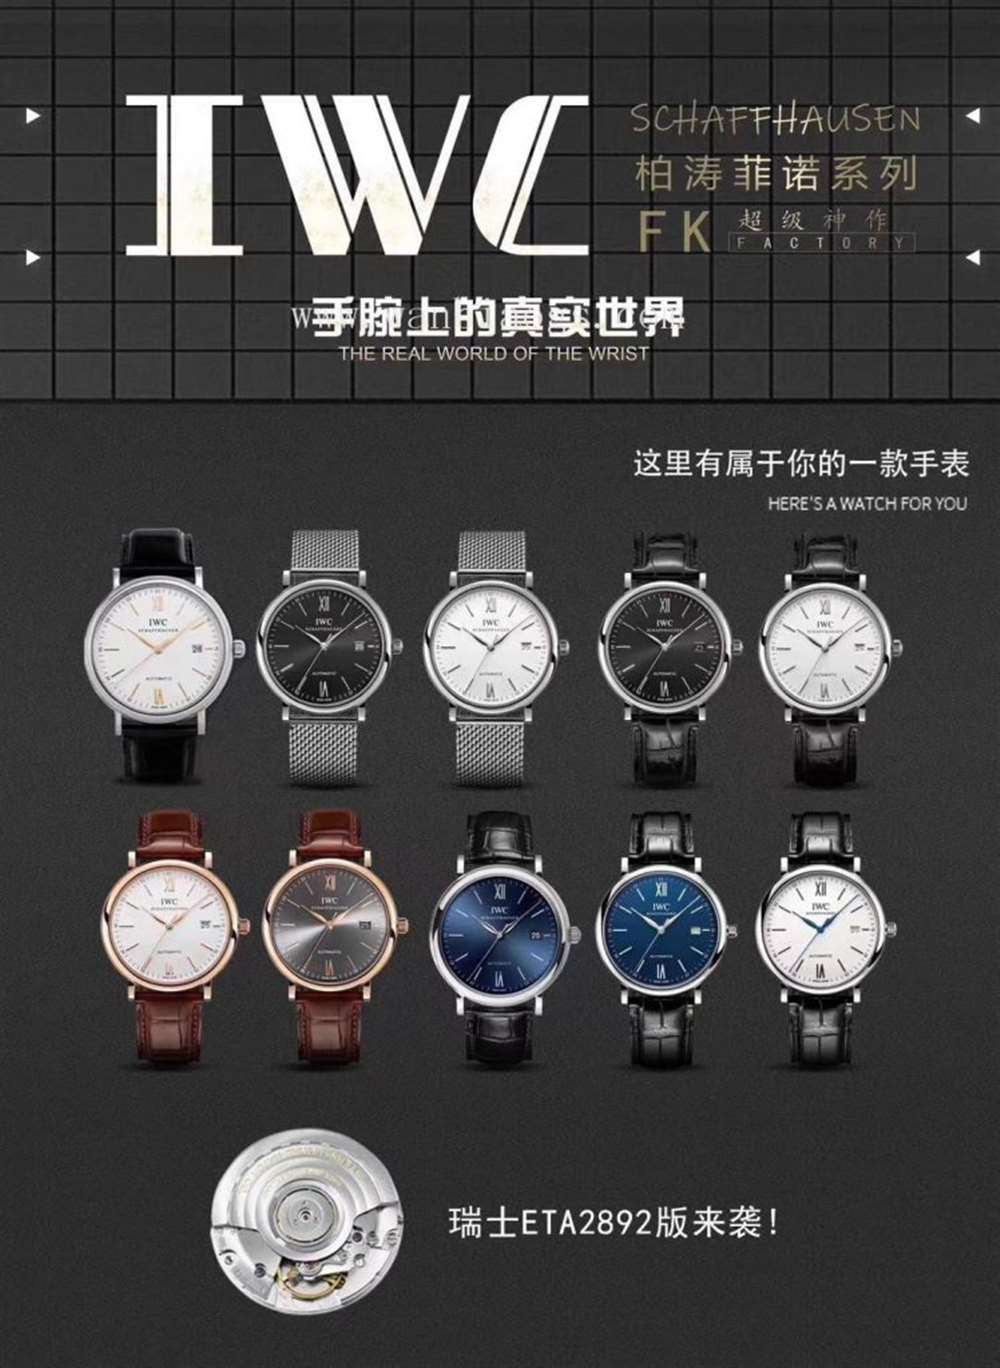 FK厂万国柏涛菲诺系列IW35630腕表—对比正品评测  第1张